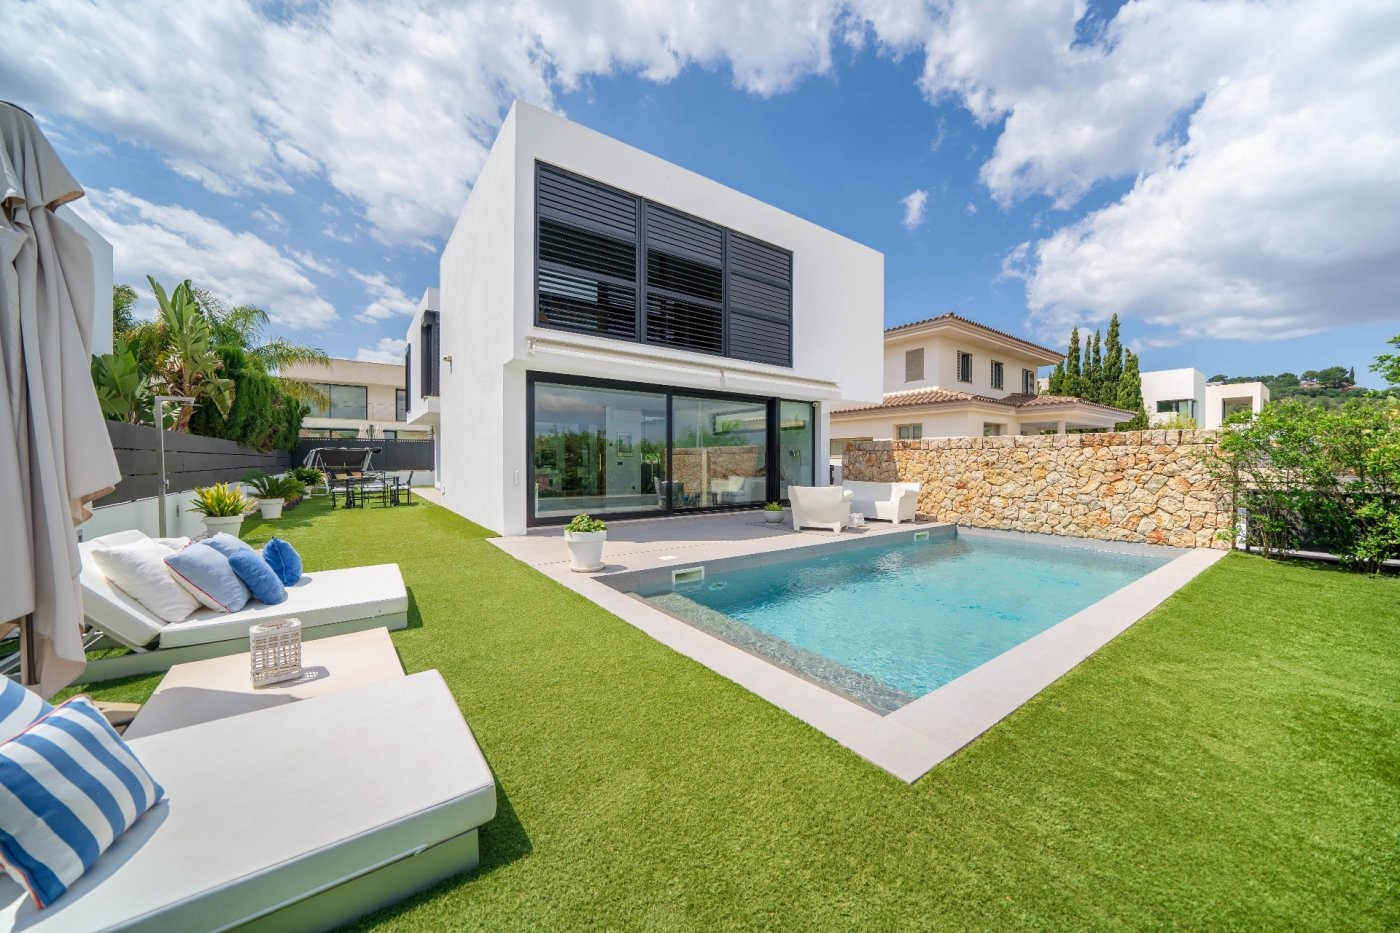 Moderne Villa mit Garten und Schwimmbad in einer grünen Gegend von Palma gelegen.